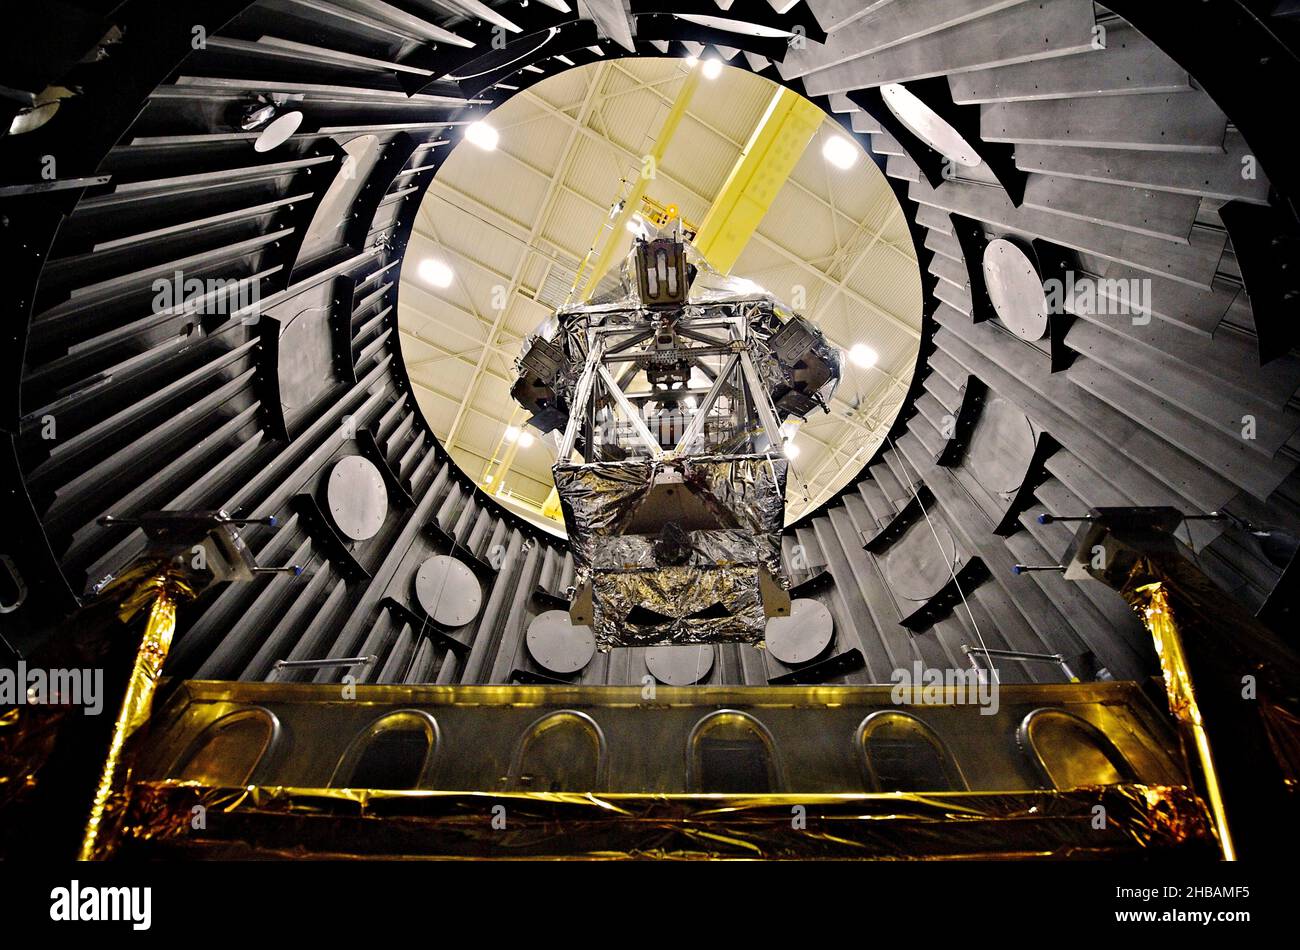 Le télescope spatial James Webb est développé conjointement par la NASA, l'Agence spatiale européenne et l'Agence spatiale canadienne.Il est prévu de succéder au télescope spatial Hubble en tant que mission astrophysique phare de la NASA.Le simulateur OTE (Optical Telescope Element) ou OSIM enveloppé dans une couverture argentée sur une plate-forme, abaissé dans une chambre à vide (appelée Space Environment Simulator, ou ses) par une grue à tester pour résister aux températures froides de l'espace.Marshall Space Flight Centre, Huntsville, Alabama, USAÊ Credit: NASA Goddard/C.GunnÊ usage éditorial seulement. Banque D'Images